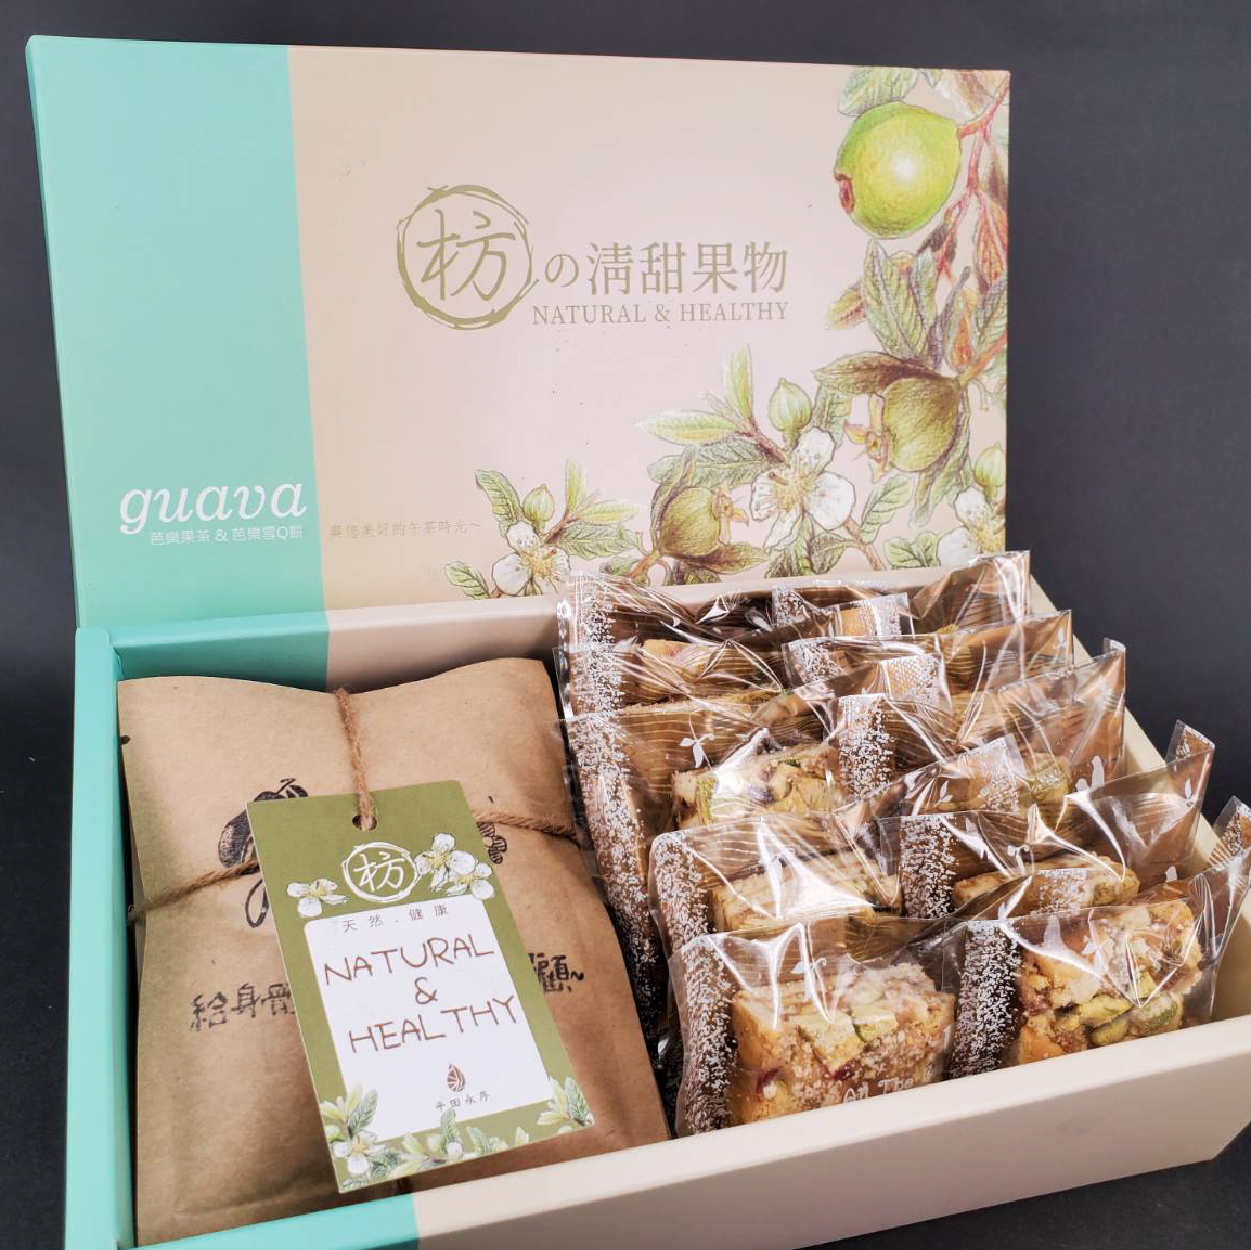 平田永序農場 芭樂雪Q餅禮盒 落實環境友善的在地台灣味